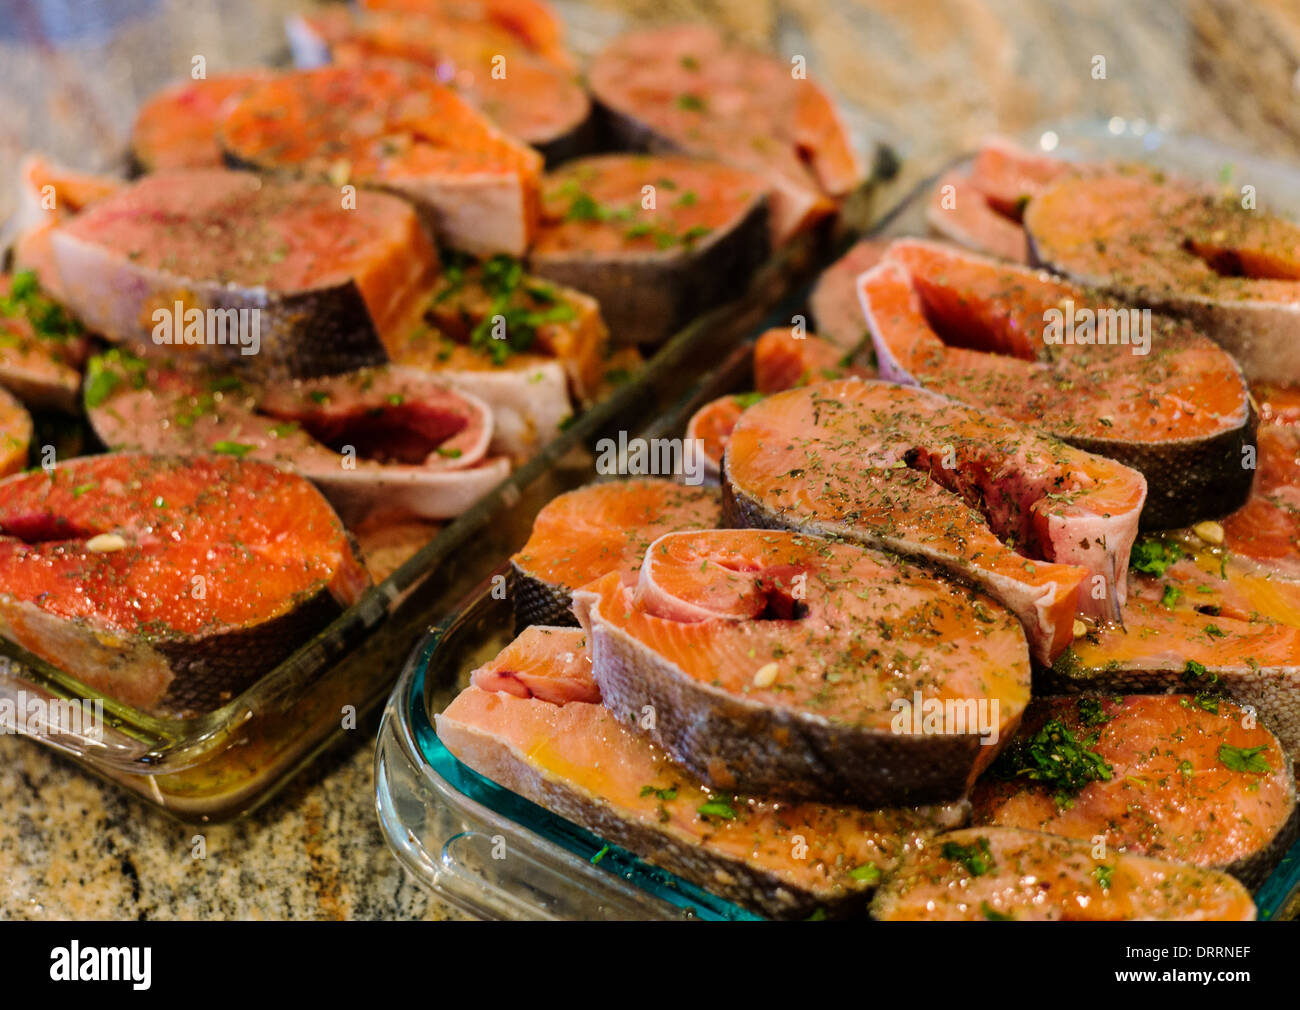 Frische Coho (Silber) Lachs Steaks aus Alaska, marinade vor dem Grillen Stockfoto